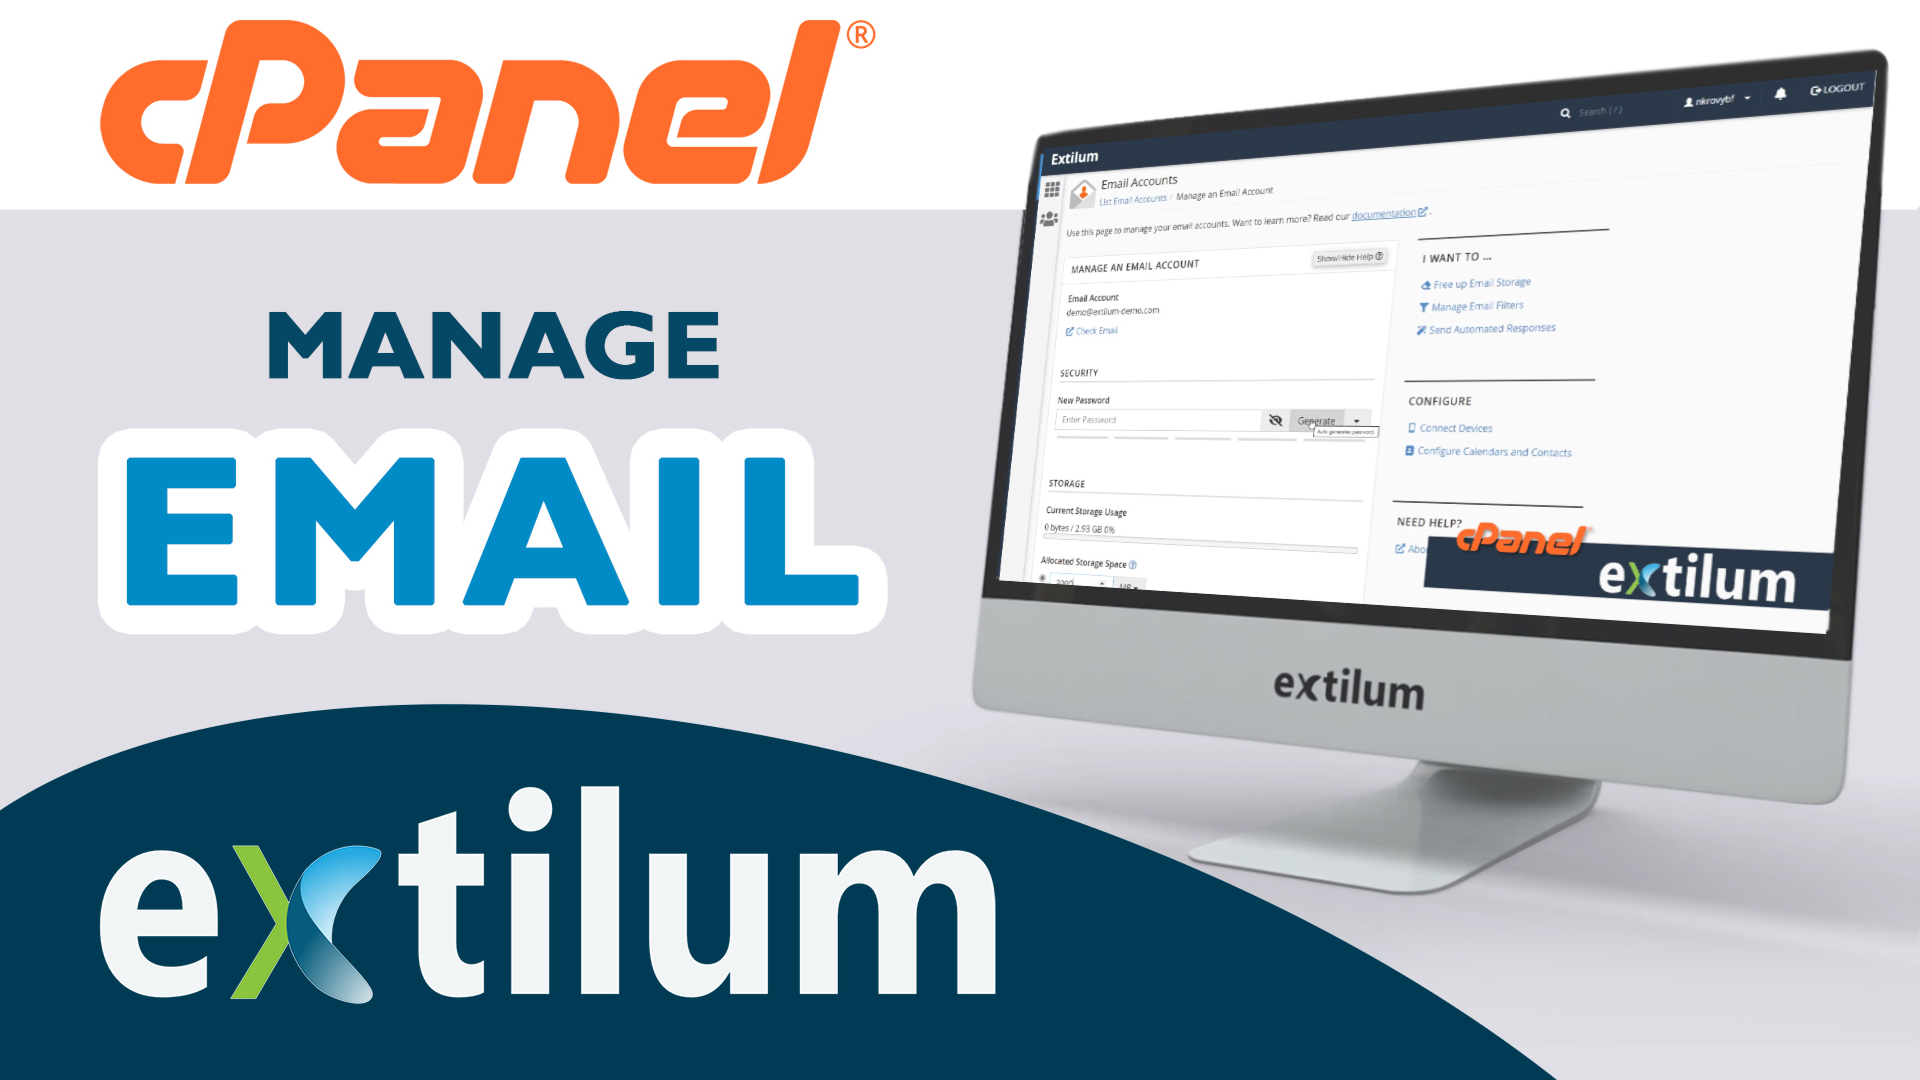 Extilum cPanel - Manage Email